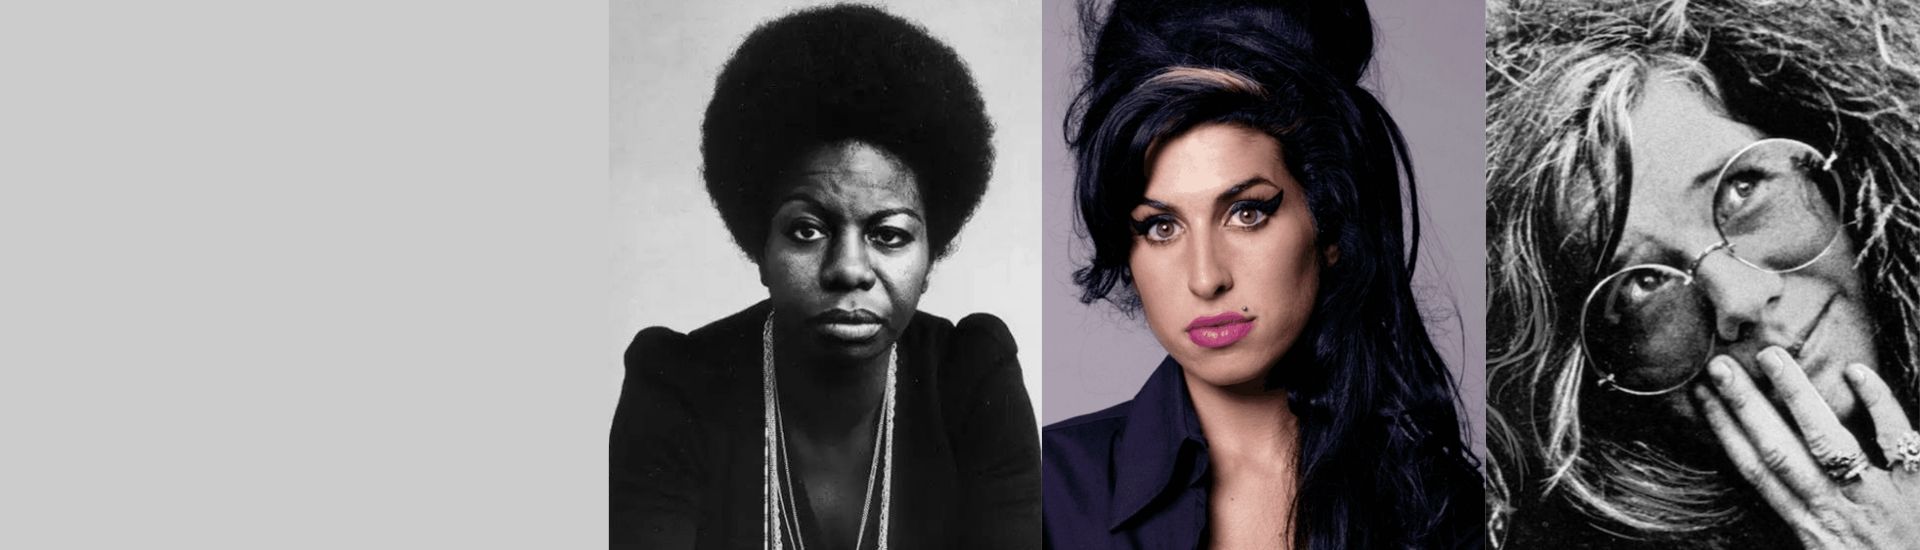 En la imagen aparece a fotografía de tres cantantes, Janis Joplin, Nina Simone y Amy Winehouse